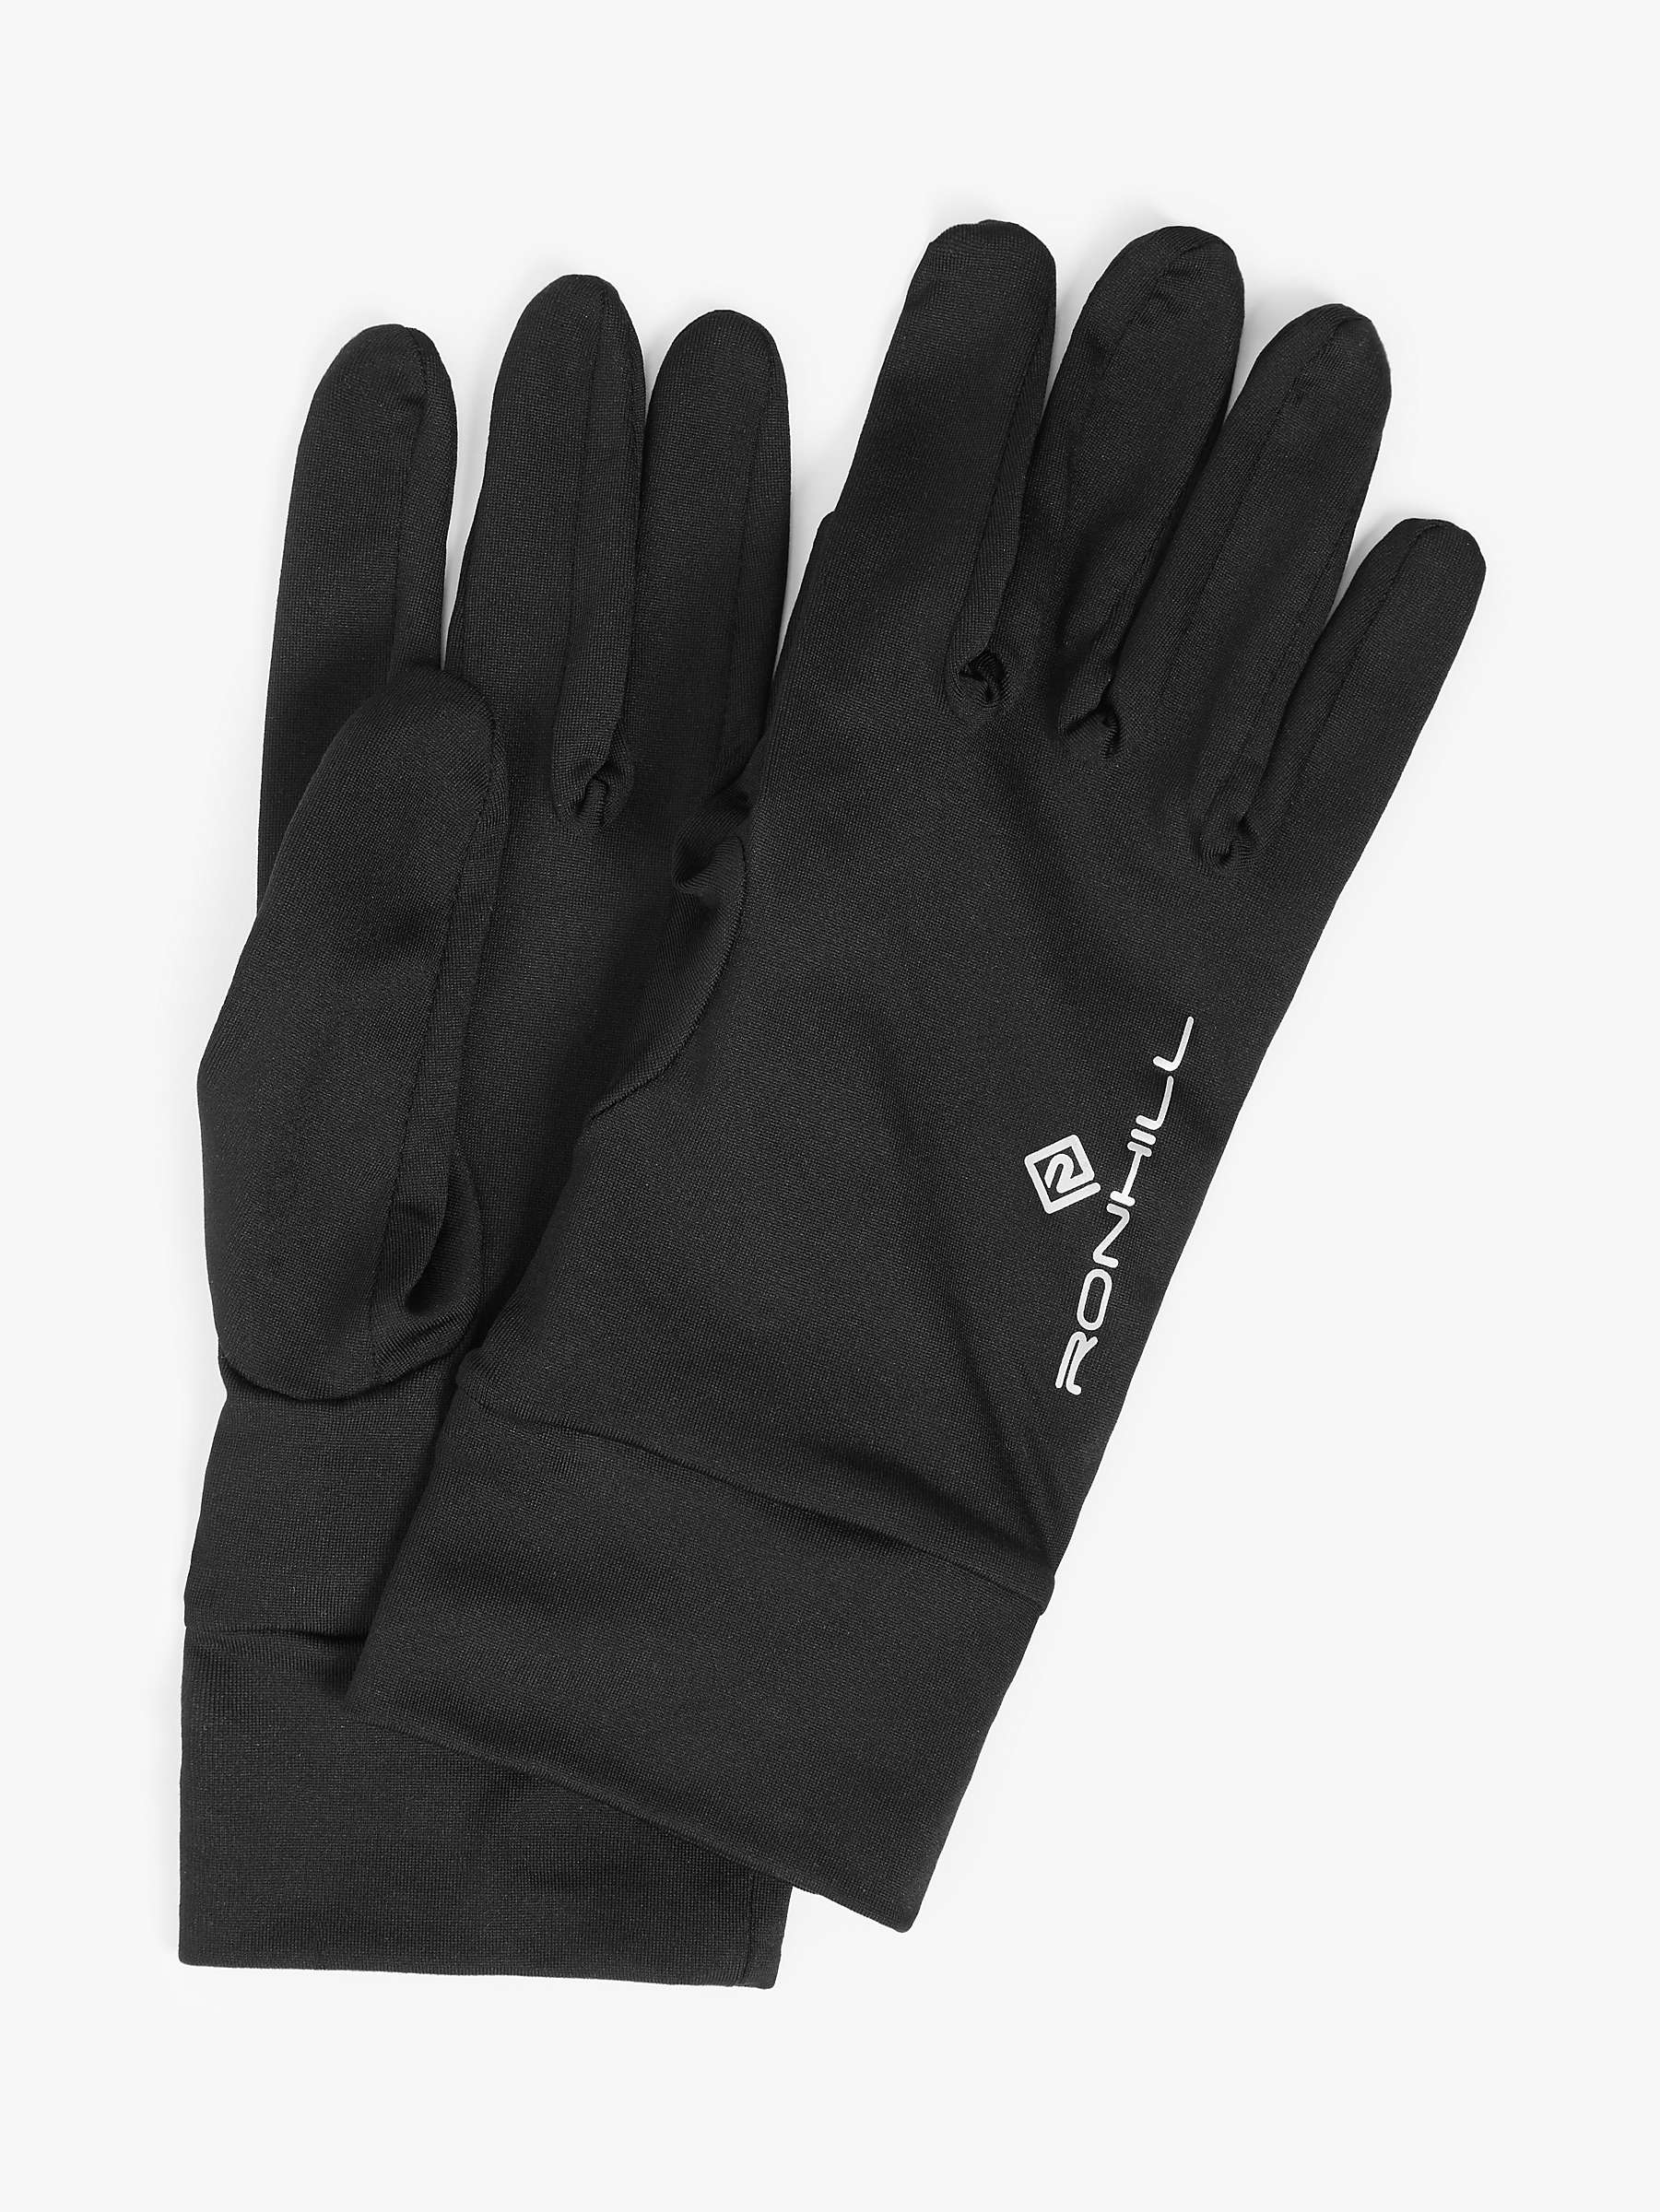 Grey Ronhill Merino Running Gloves 